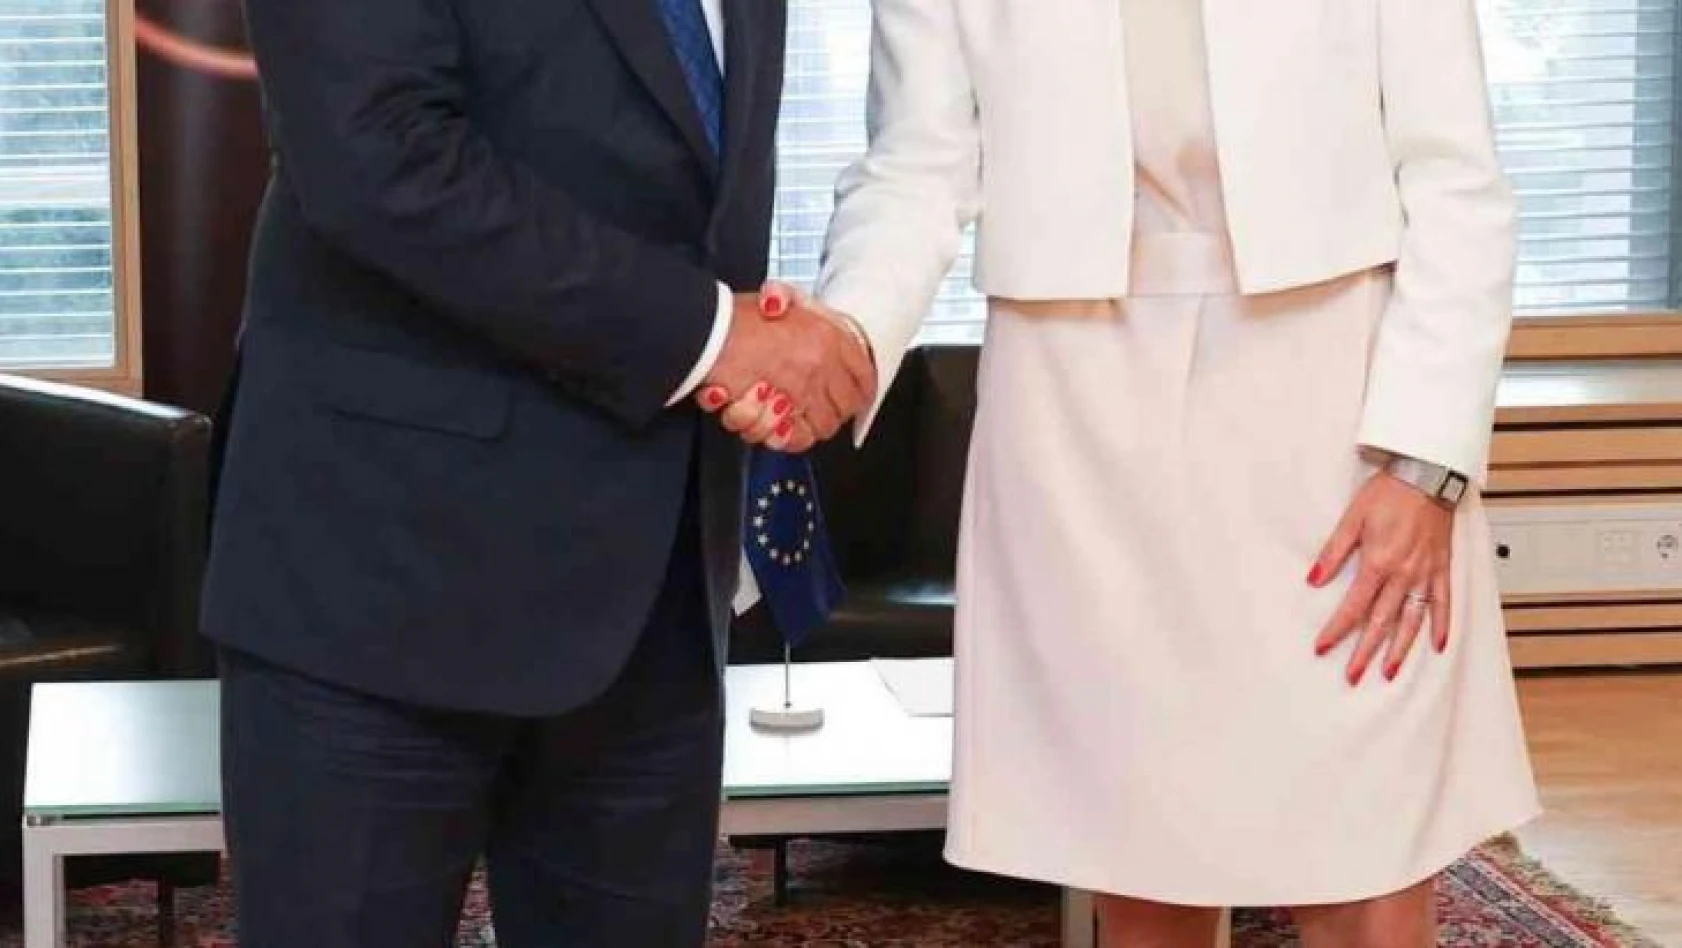 Dışişleri Bakanı Çavuşoğlu, Slovenya Dışişleri Bakanı Fajon ile bir araya geldi